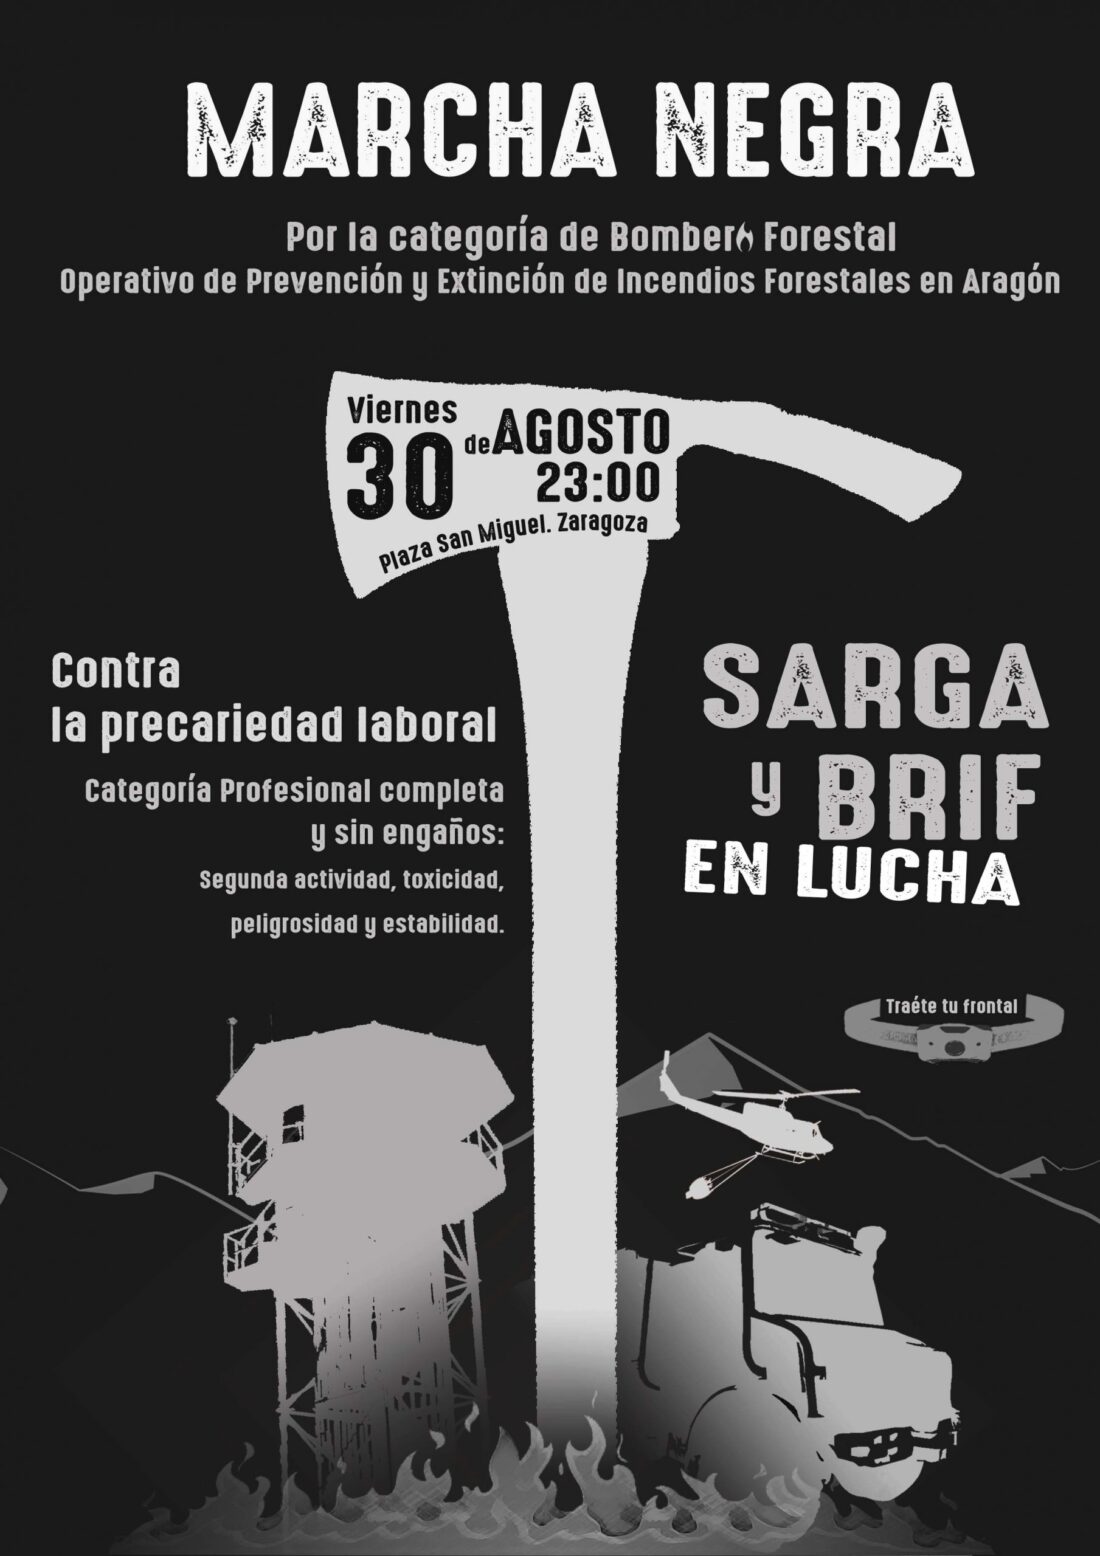 Manifestación nocturna en Zaragoza contra la precariedad laboral en SARGA y TRAGSA